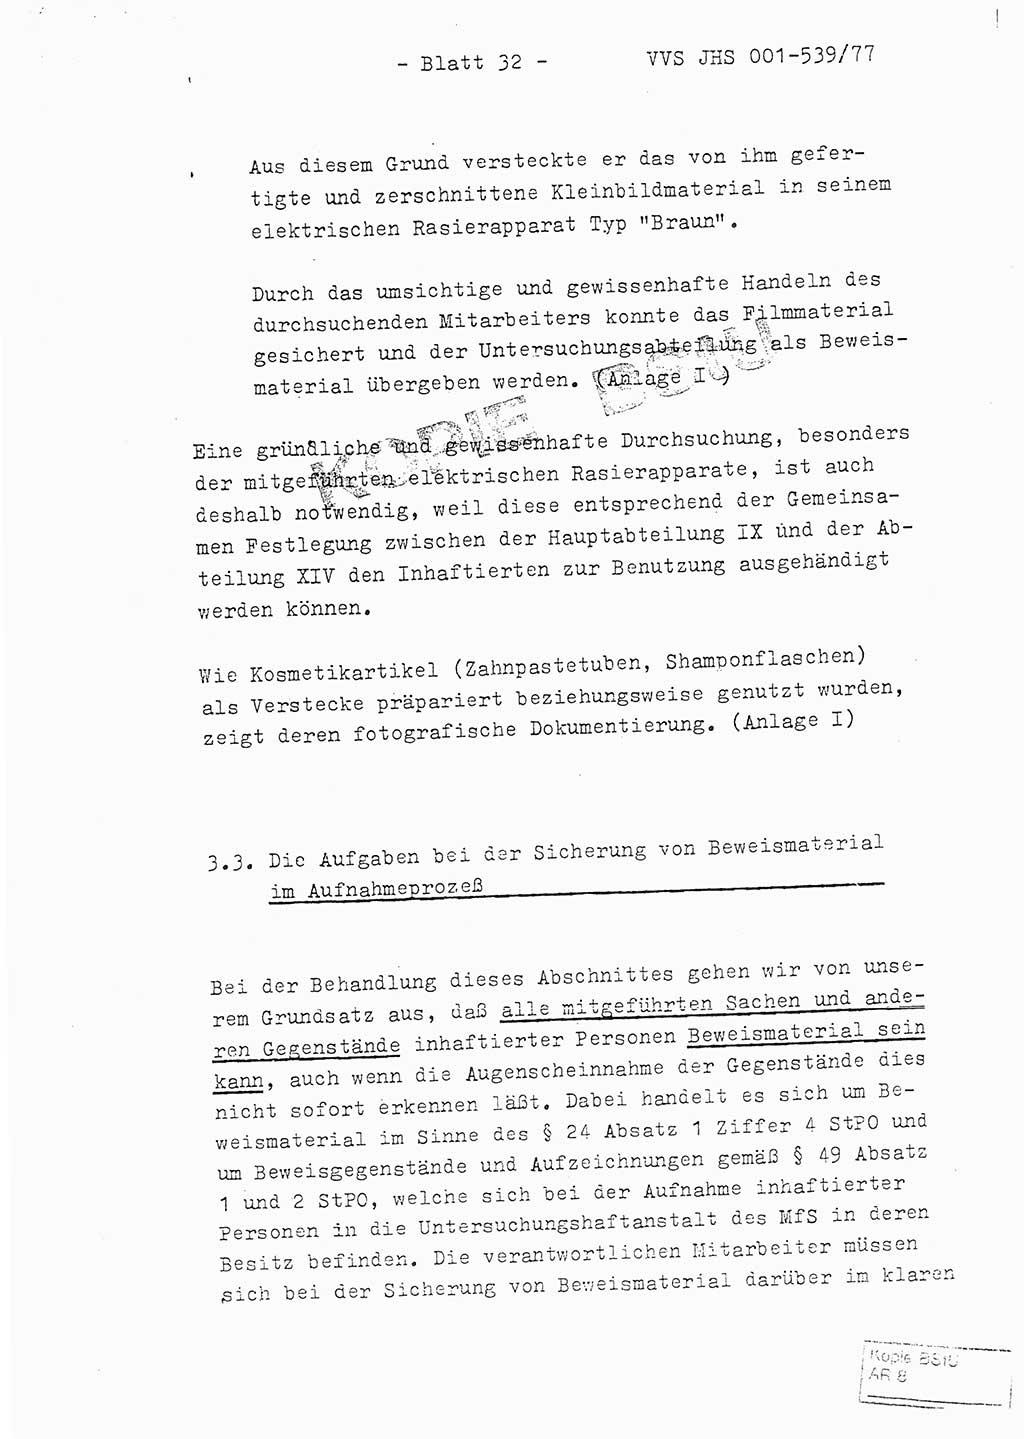 Fachschulabschlußarbeit Hauptmann Dietrich Jung (Abt. ⅩⅣ), Leutnant Klaus Klötzner (Abt. ⅩⅣ), Ministerium für Staatssicherheit (MfS) [Deutsche Demokratische Republik (DDR)], Juristische Hochschule (JHS), Vertrauliche Verschlußsache (VVS) 001-539/77, Potsdam 1978, Seite 32 (FS-Abschl.-Arb. MfS DDR JHS VVS 001-539/77 1978, S. 32)